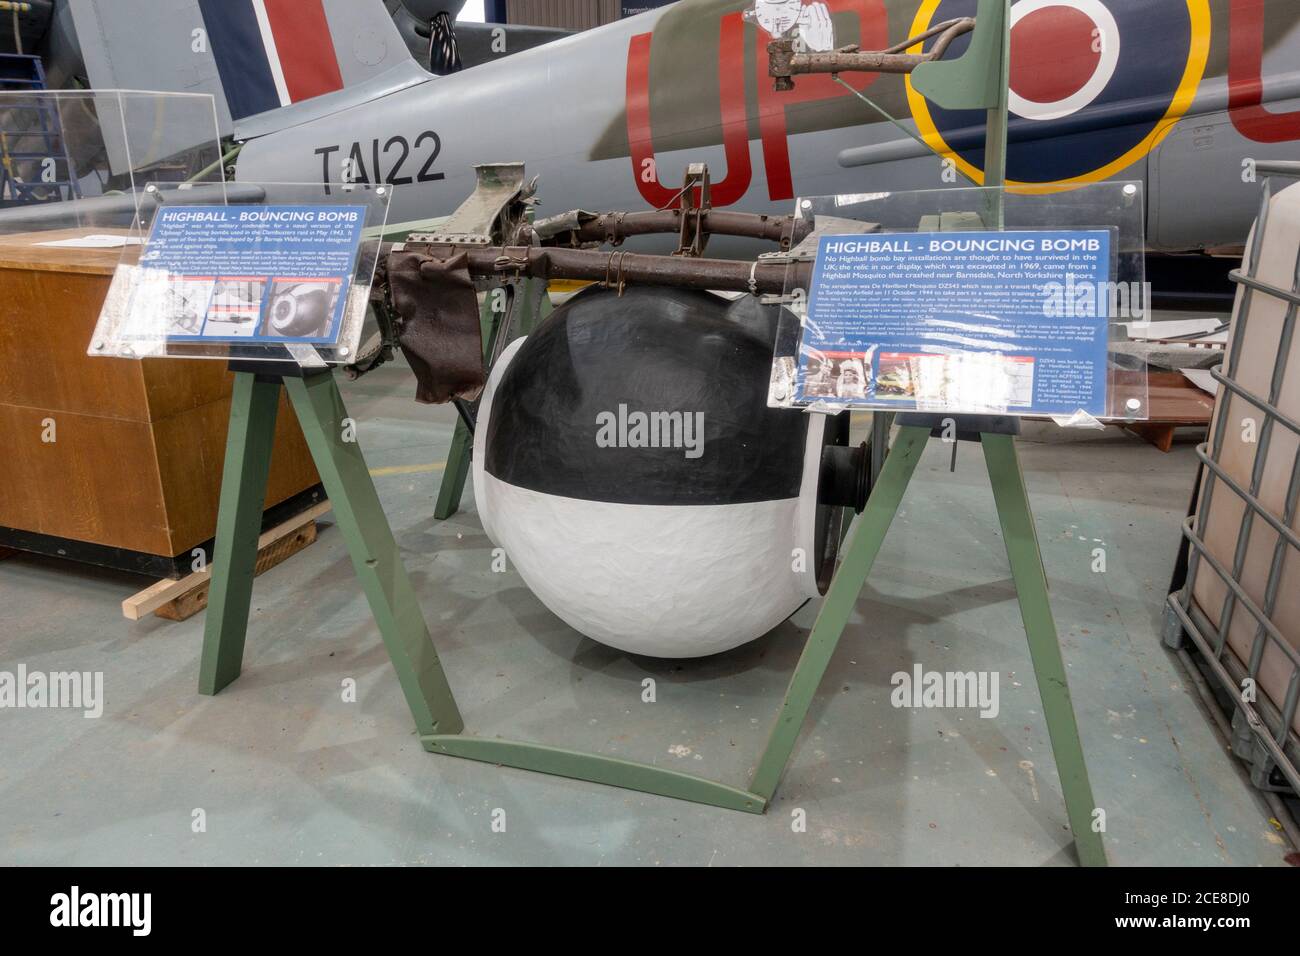 Un "Highball" que rebotaba bomba se exhibió en el Museo de Havilland, London Colney, Reino Unido Foto de stock